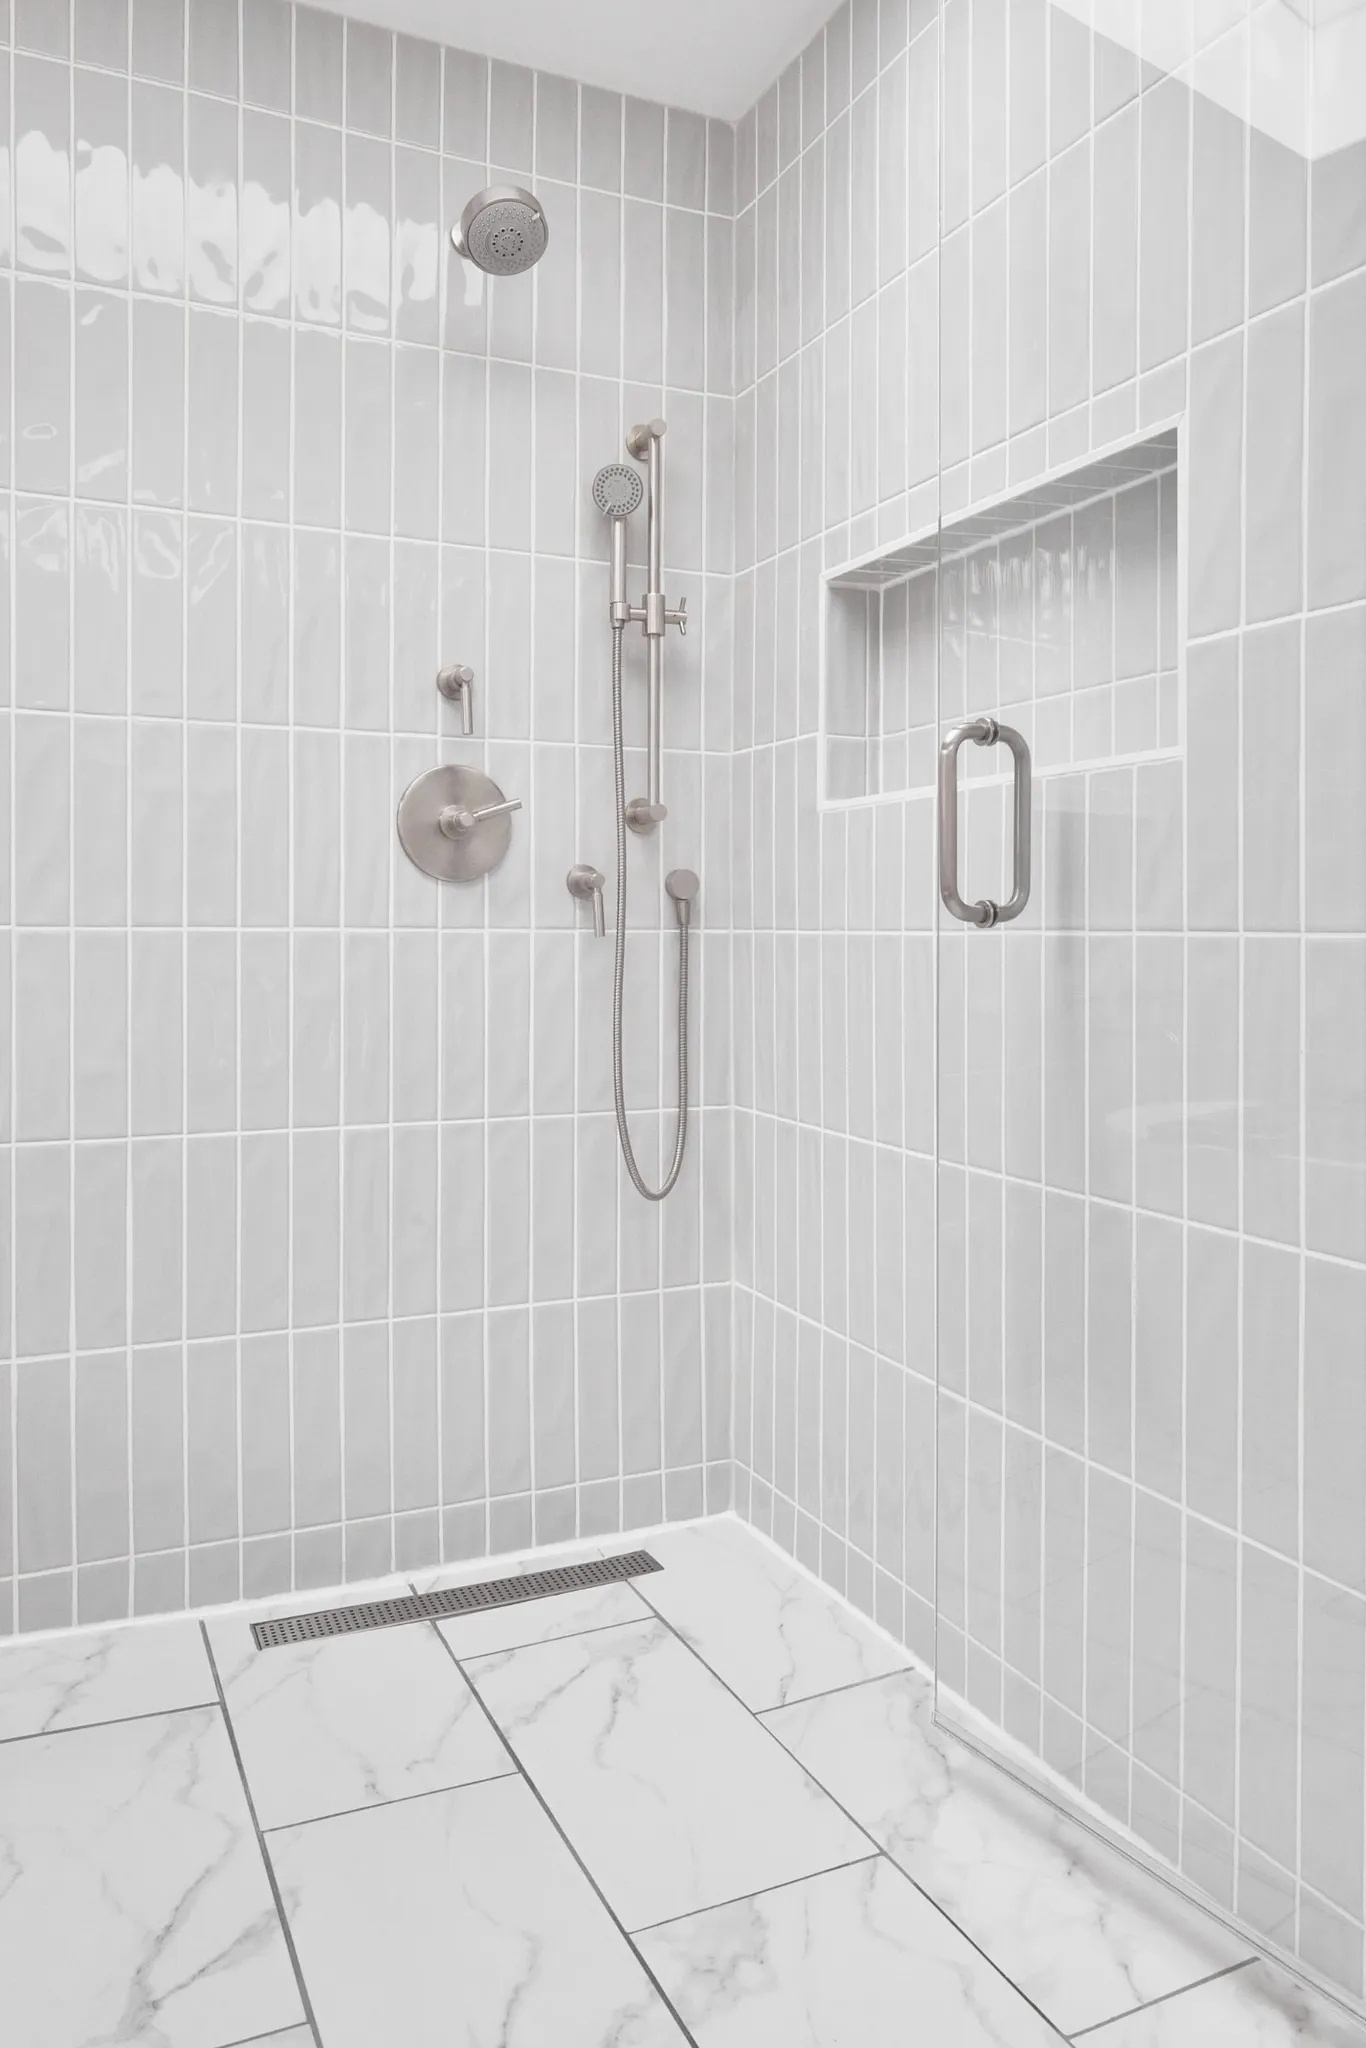 Wet room shower area